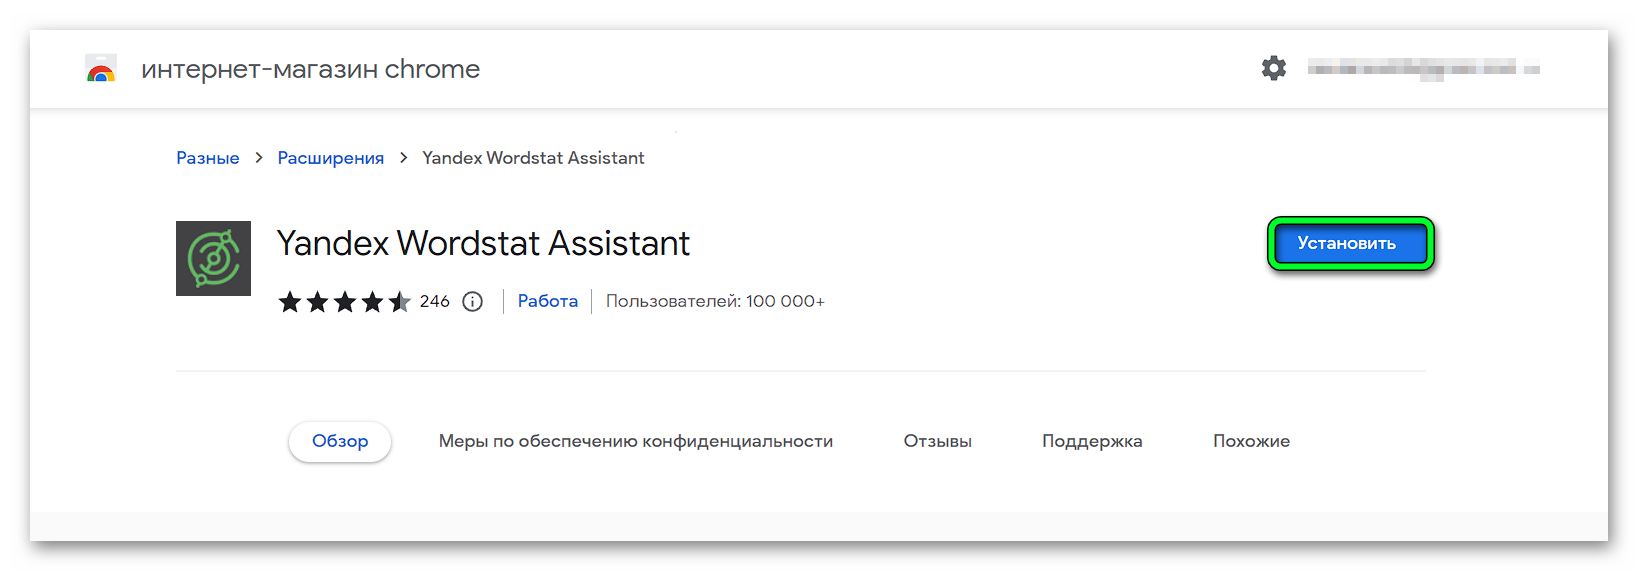 Установить расширение Яндекс Вордстат Ассистент